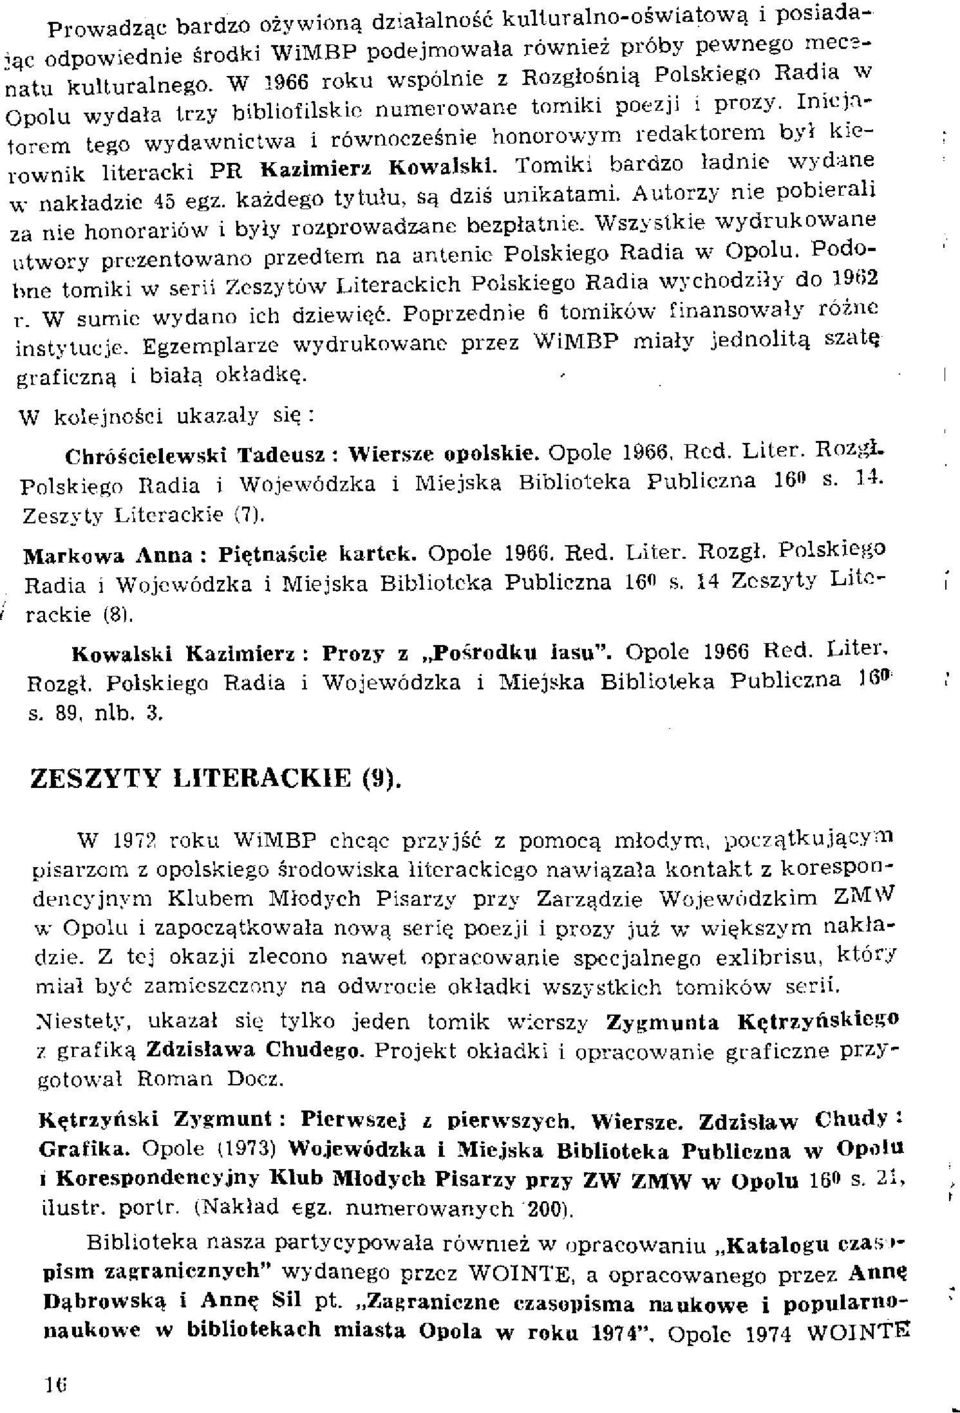 Inicjatorem tego wydawnictwa i równocześnie honorowym redaktorem był kierownik literacki PR Kazimierz Kowalski. Tomiki bardzo ładnie wydane w nakładzie 45 egz. każdego tytułu, są dziś unikatami.